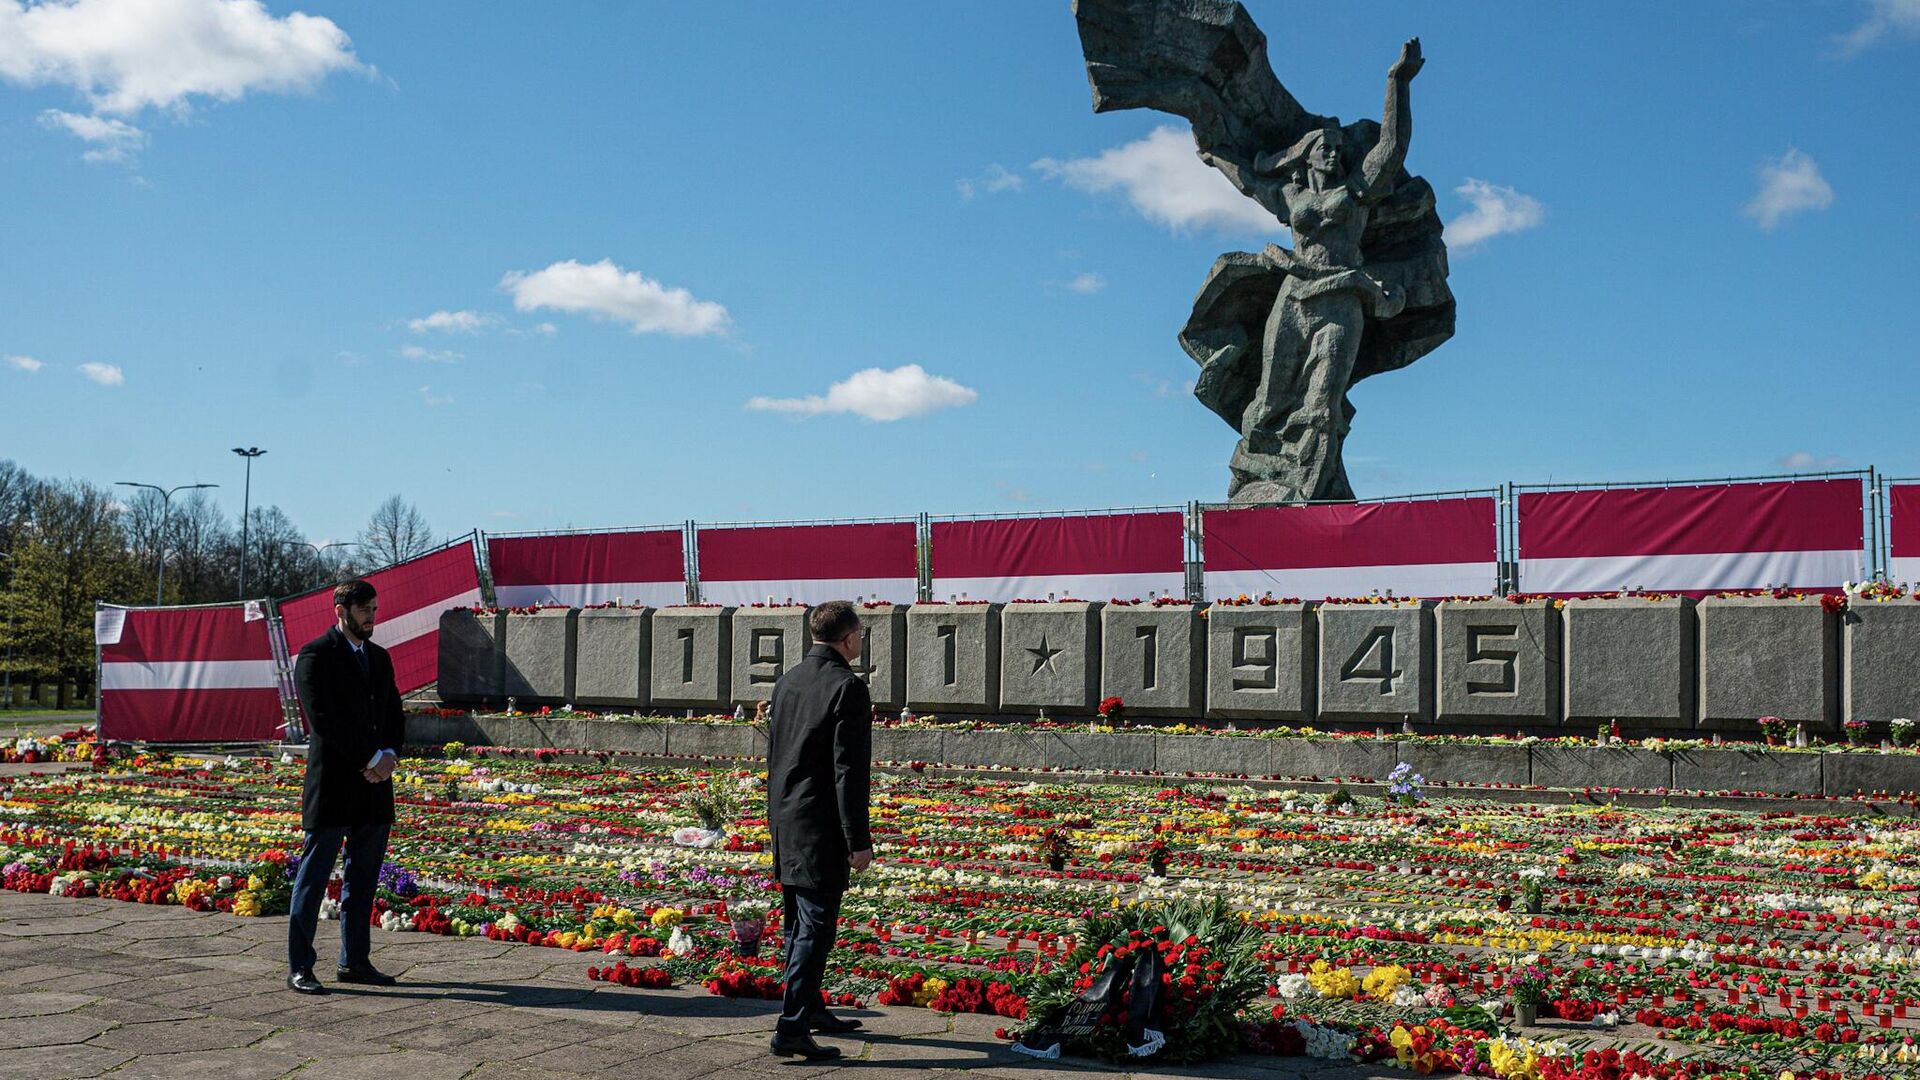 Обстановка у памятника Освободителям в Риге 9 Мая 2022 года - Sputnik Латвия, 1920, 19.05.2022